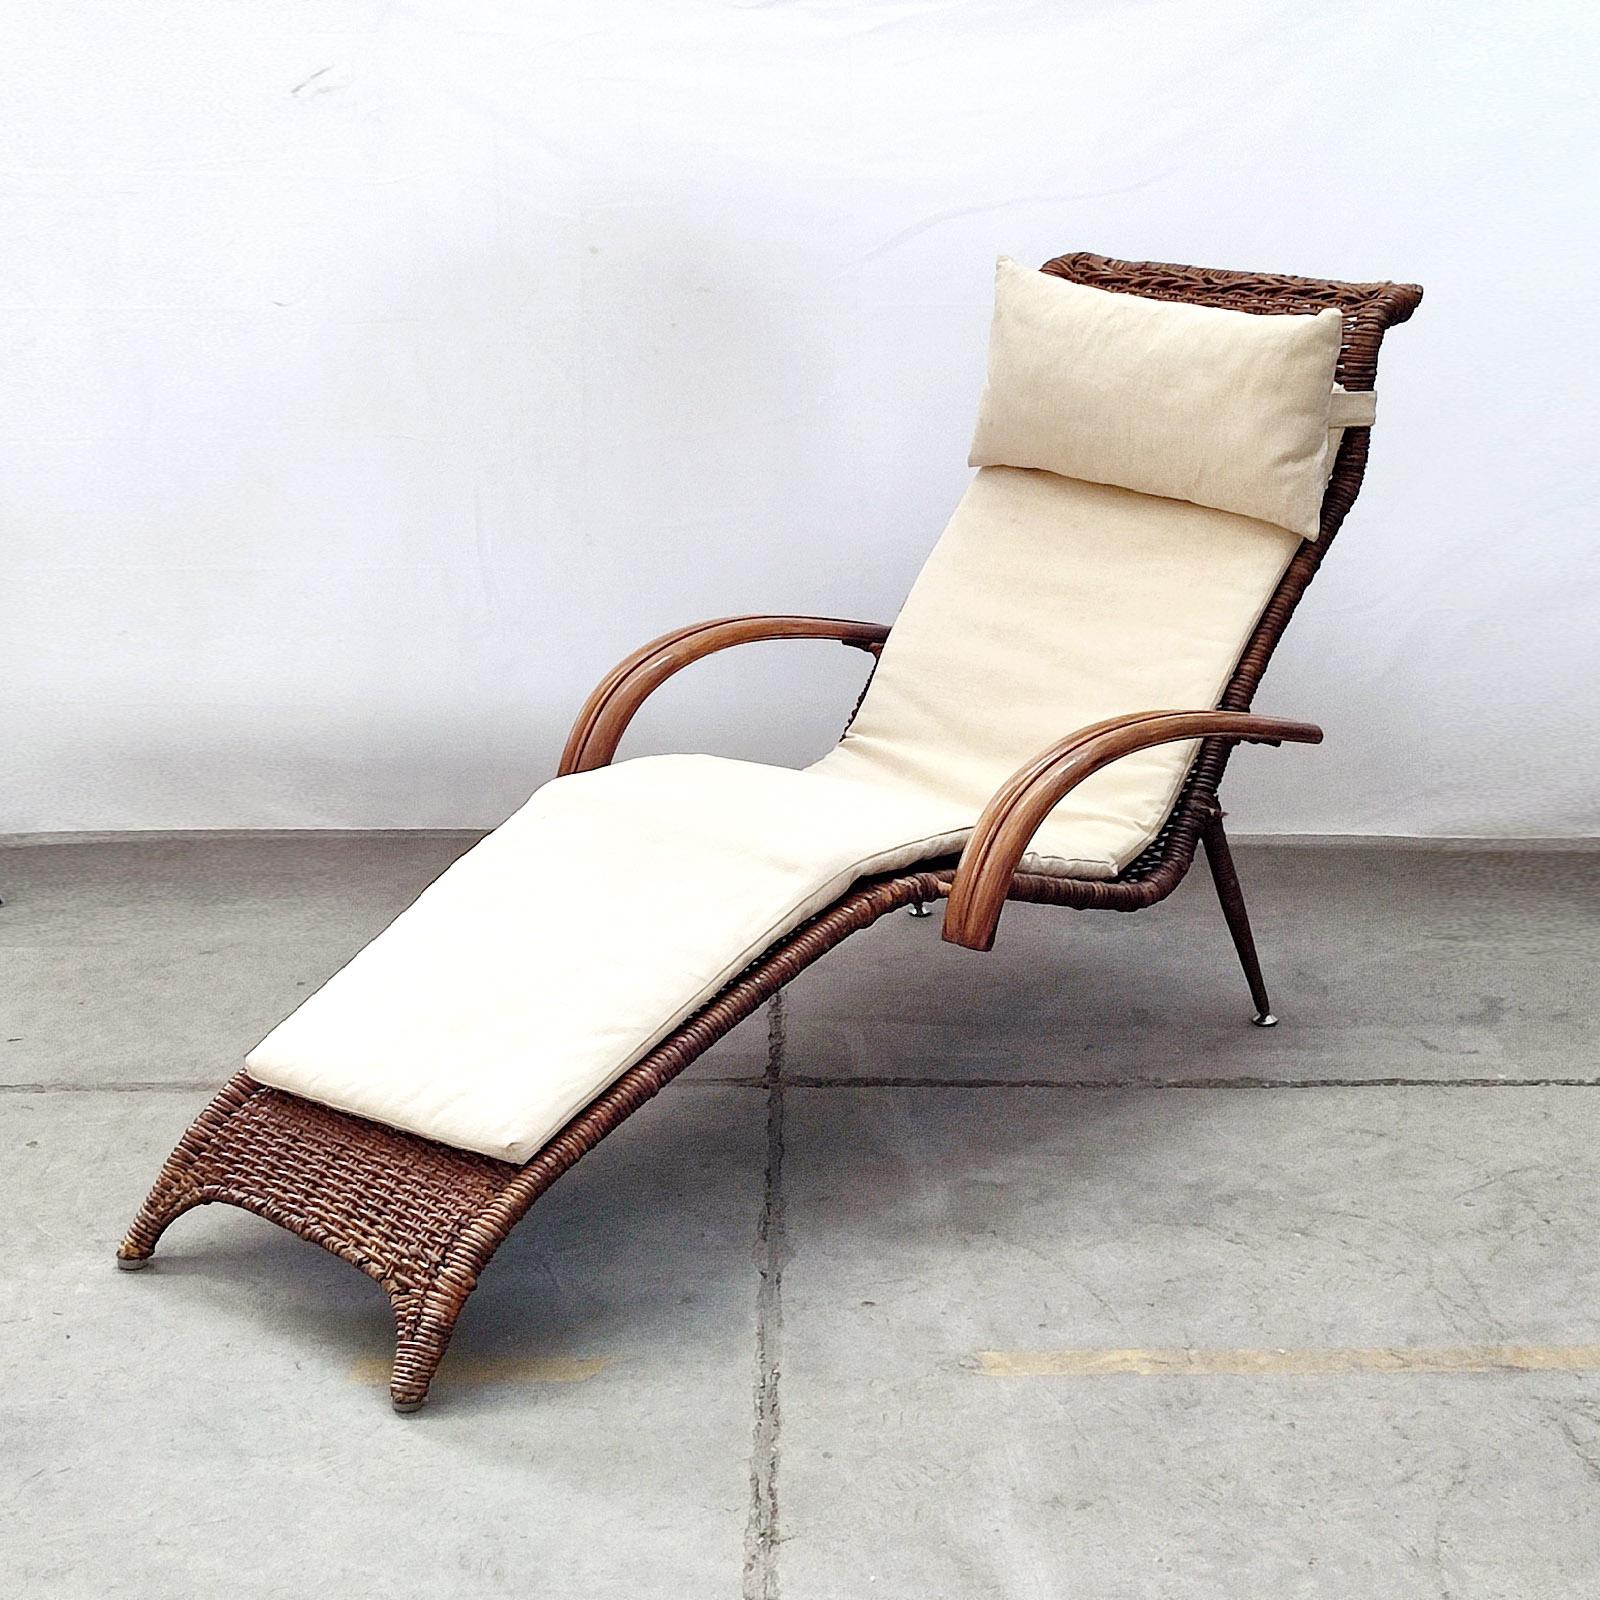 Chaise longue italienne sculpturale du milieu du siècle, en rotin et bambou, avec matelas et coussin repose-tête en lin blanc cassé.
Cette magnifique chaise longue sculpturale est composée d'un cadre métallique solide et d'accoudoirs en rotin et